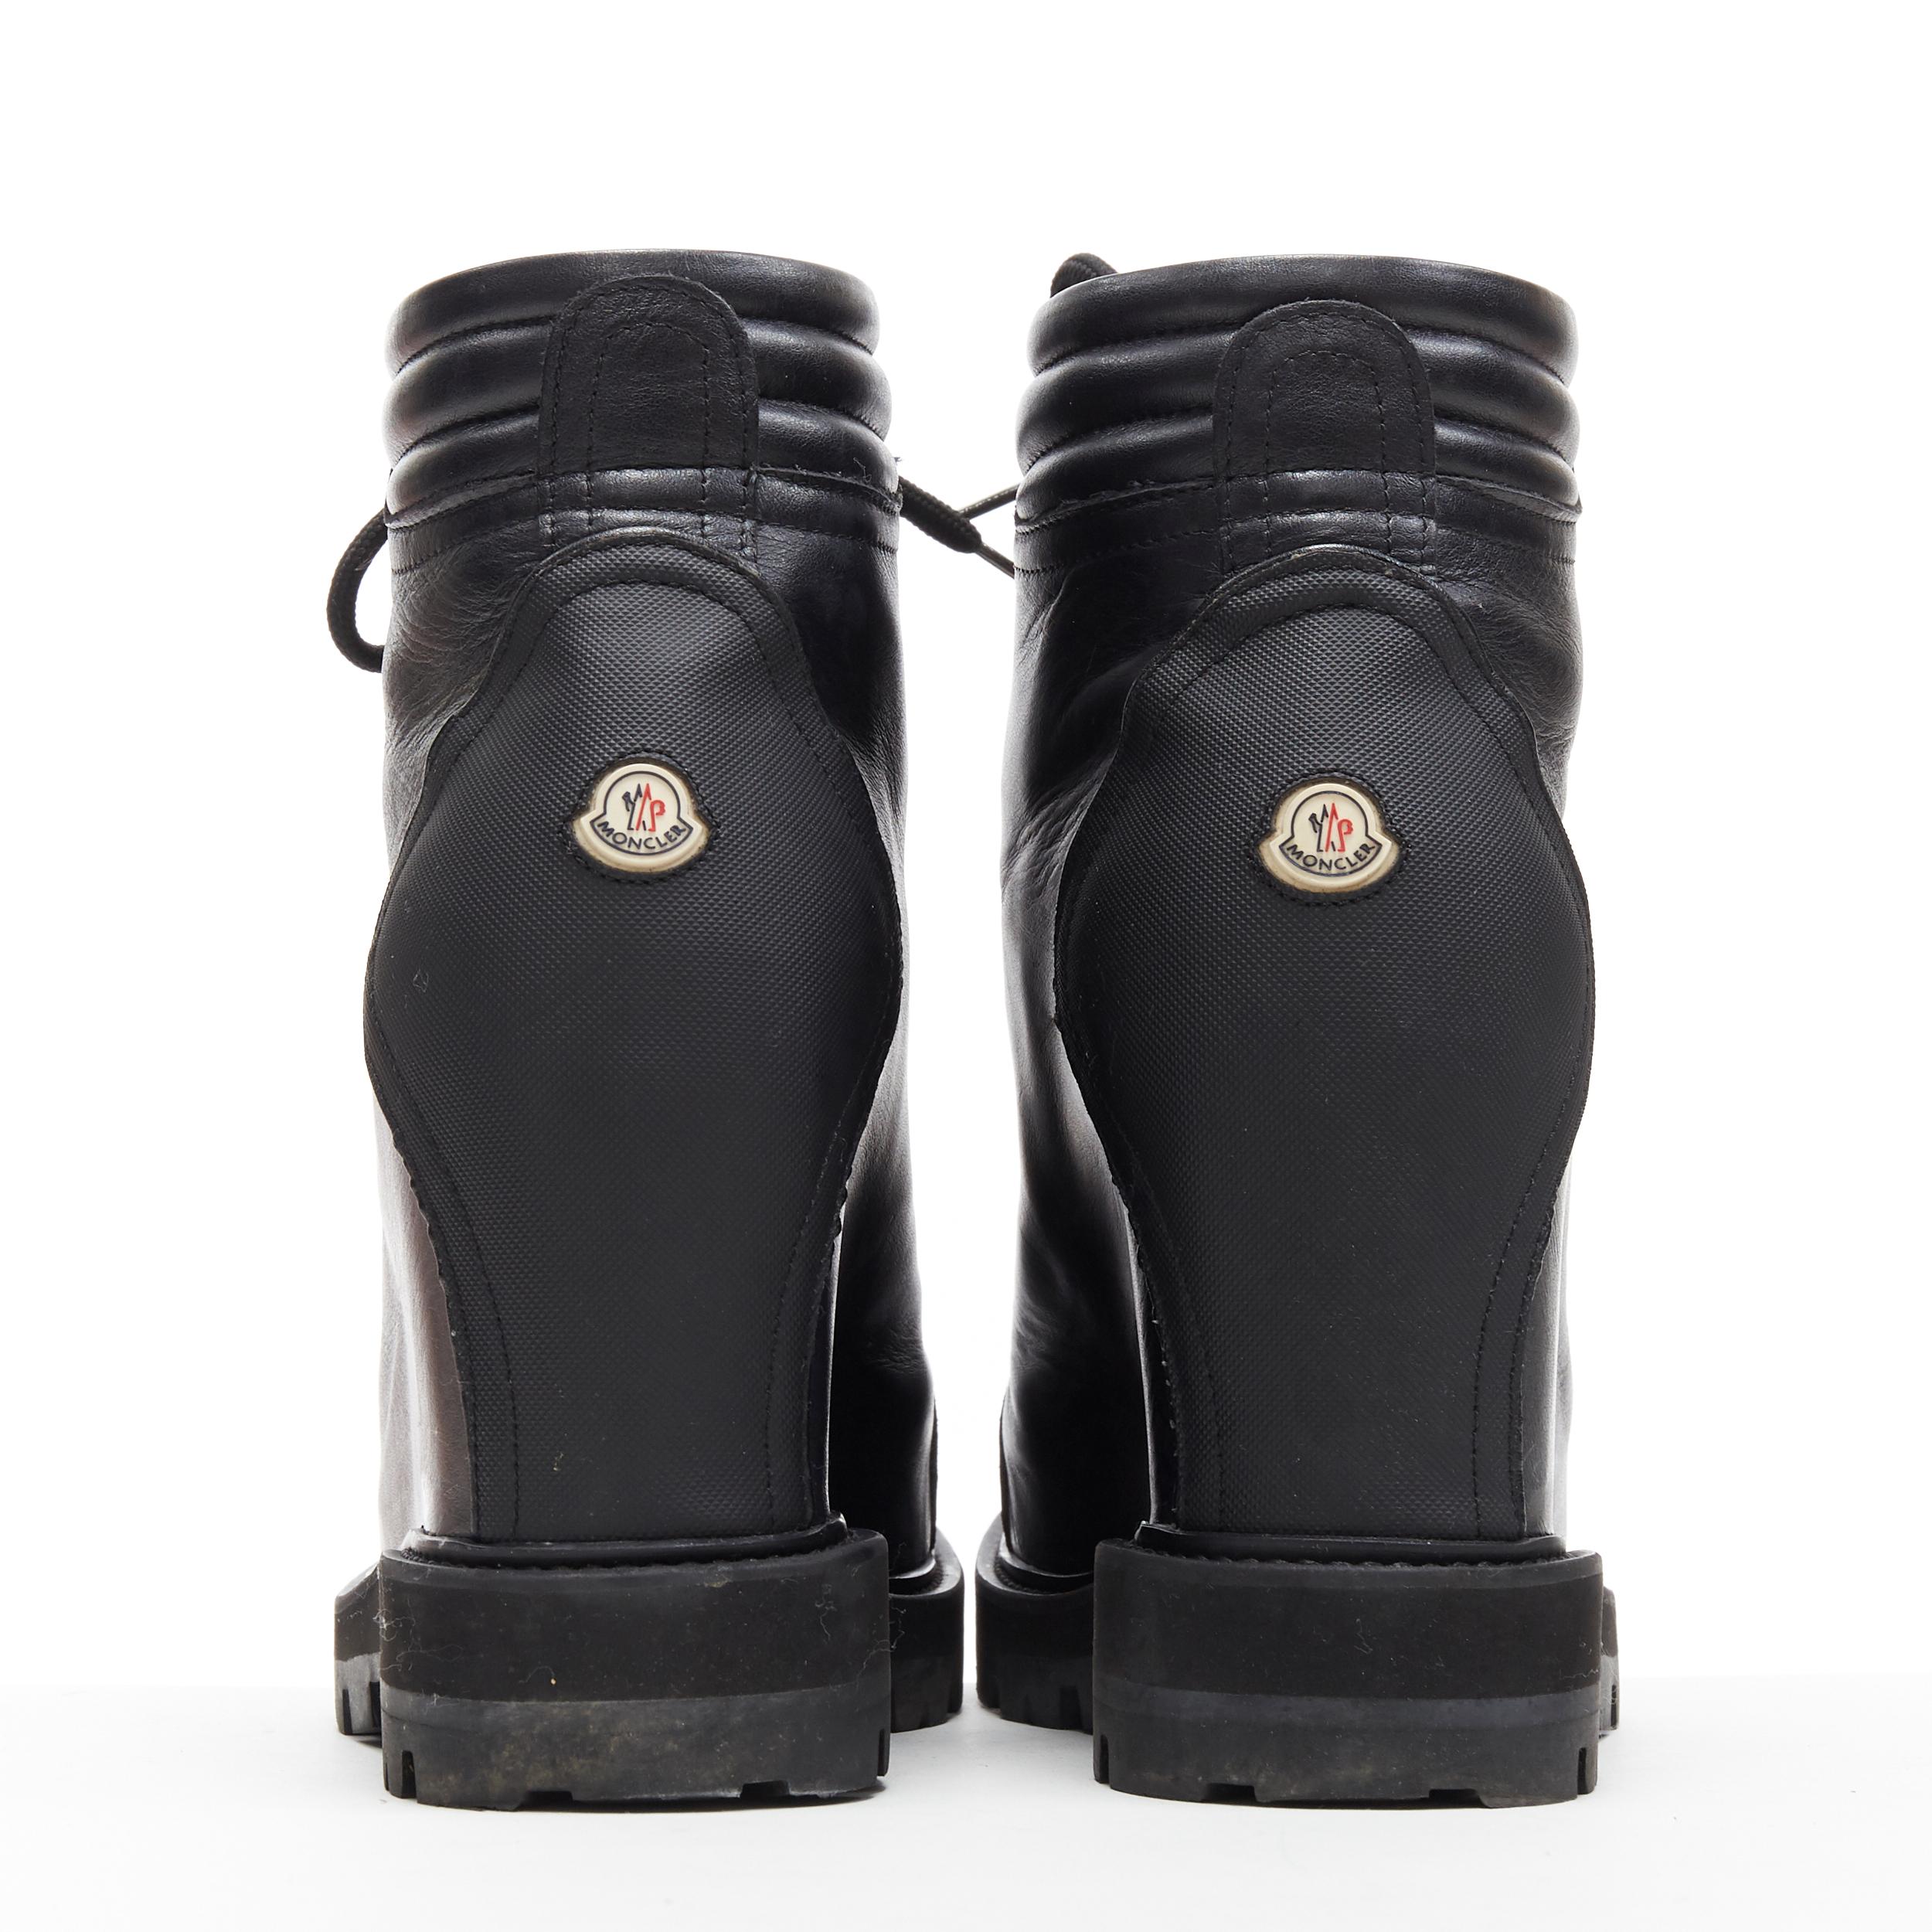 Black MONCLER black leather concealed high heel wedge paltform hiking ankle boot EU38